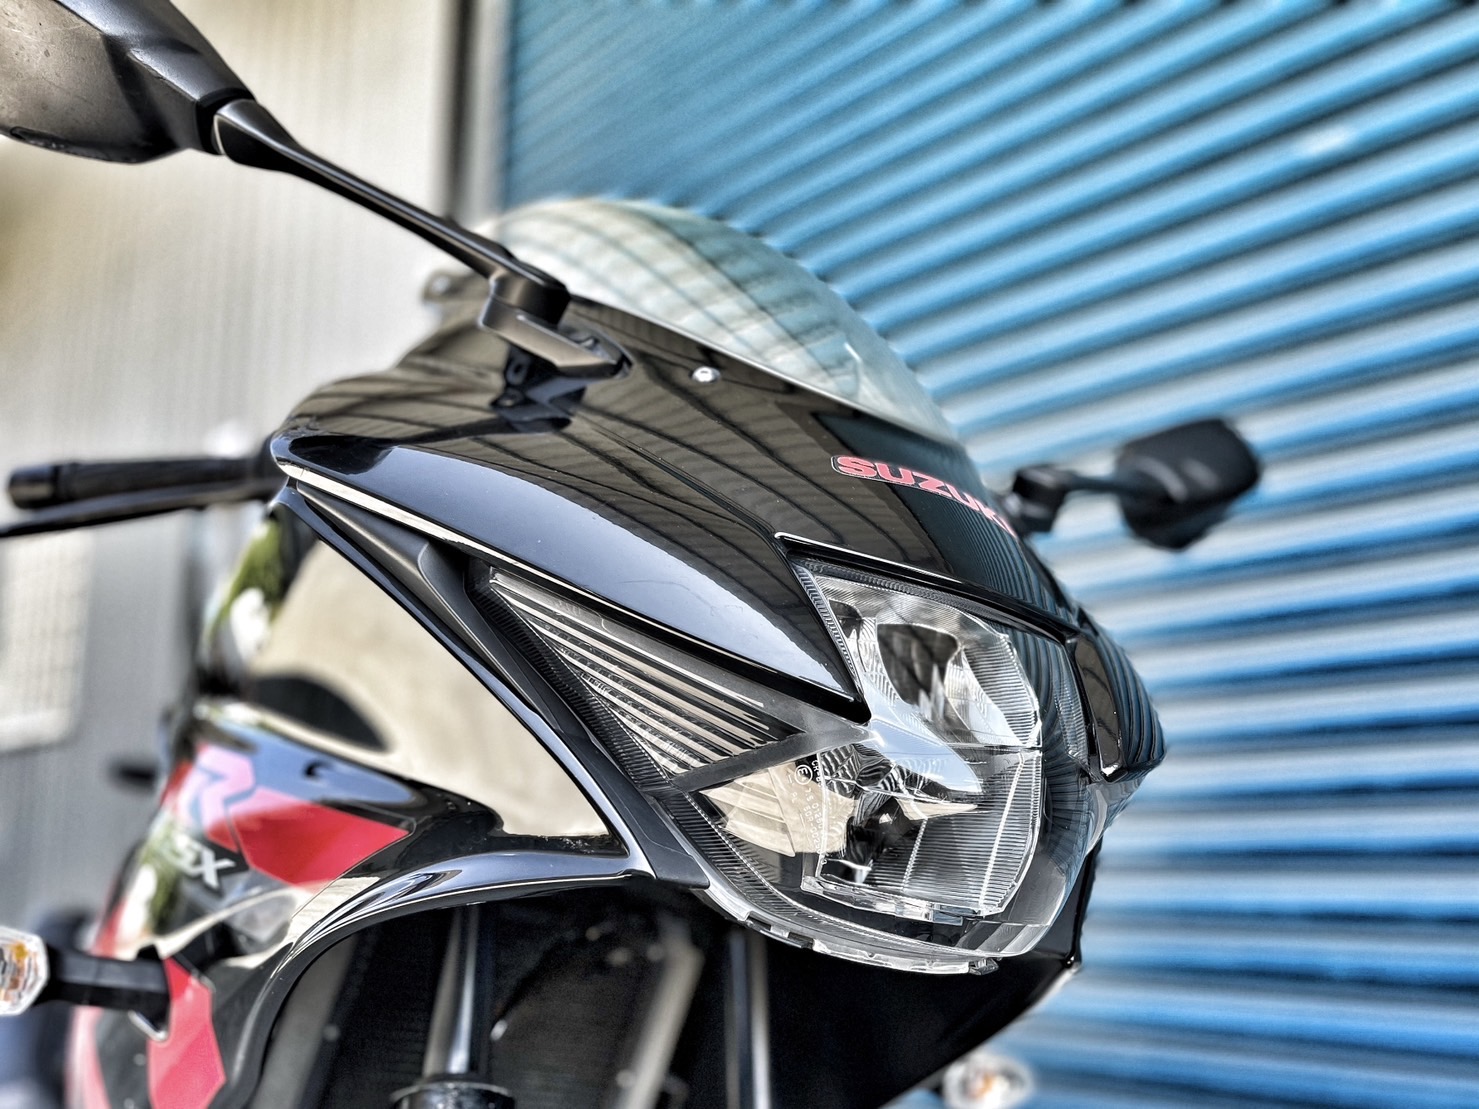 【小資族二手重機買賣】SUZUKI GSX-R150 - 「Webike-摩托車市」 黑色系 無摔無事故 小資族二手重機買賣